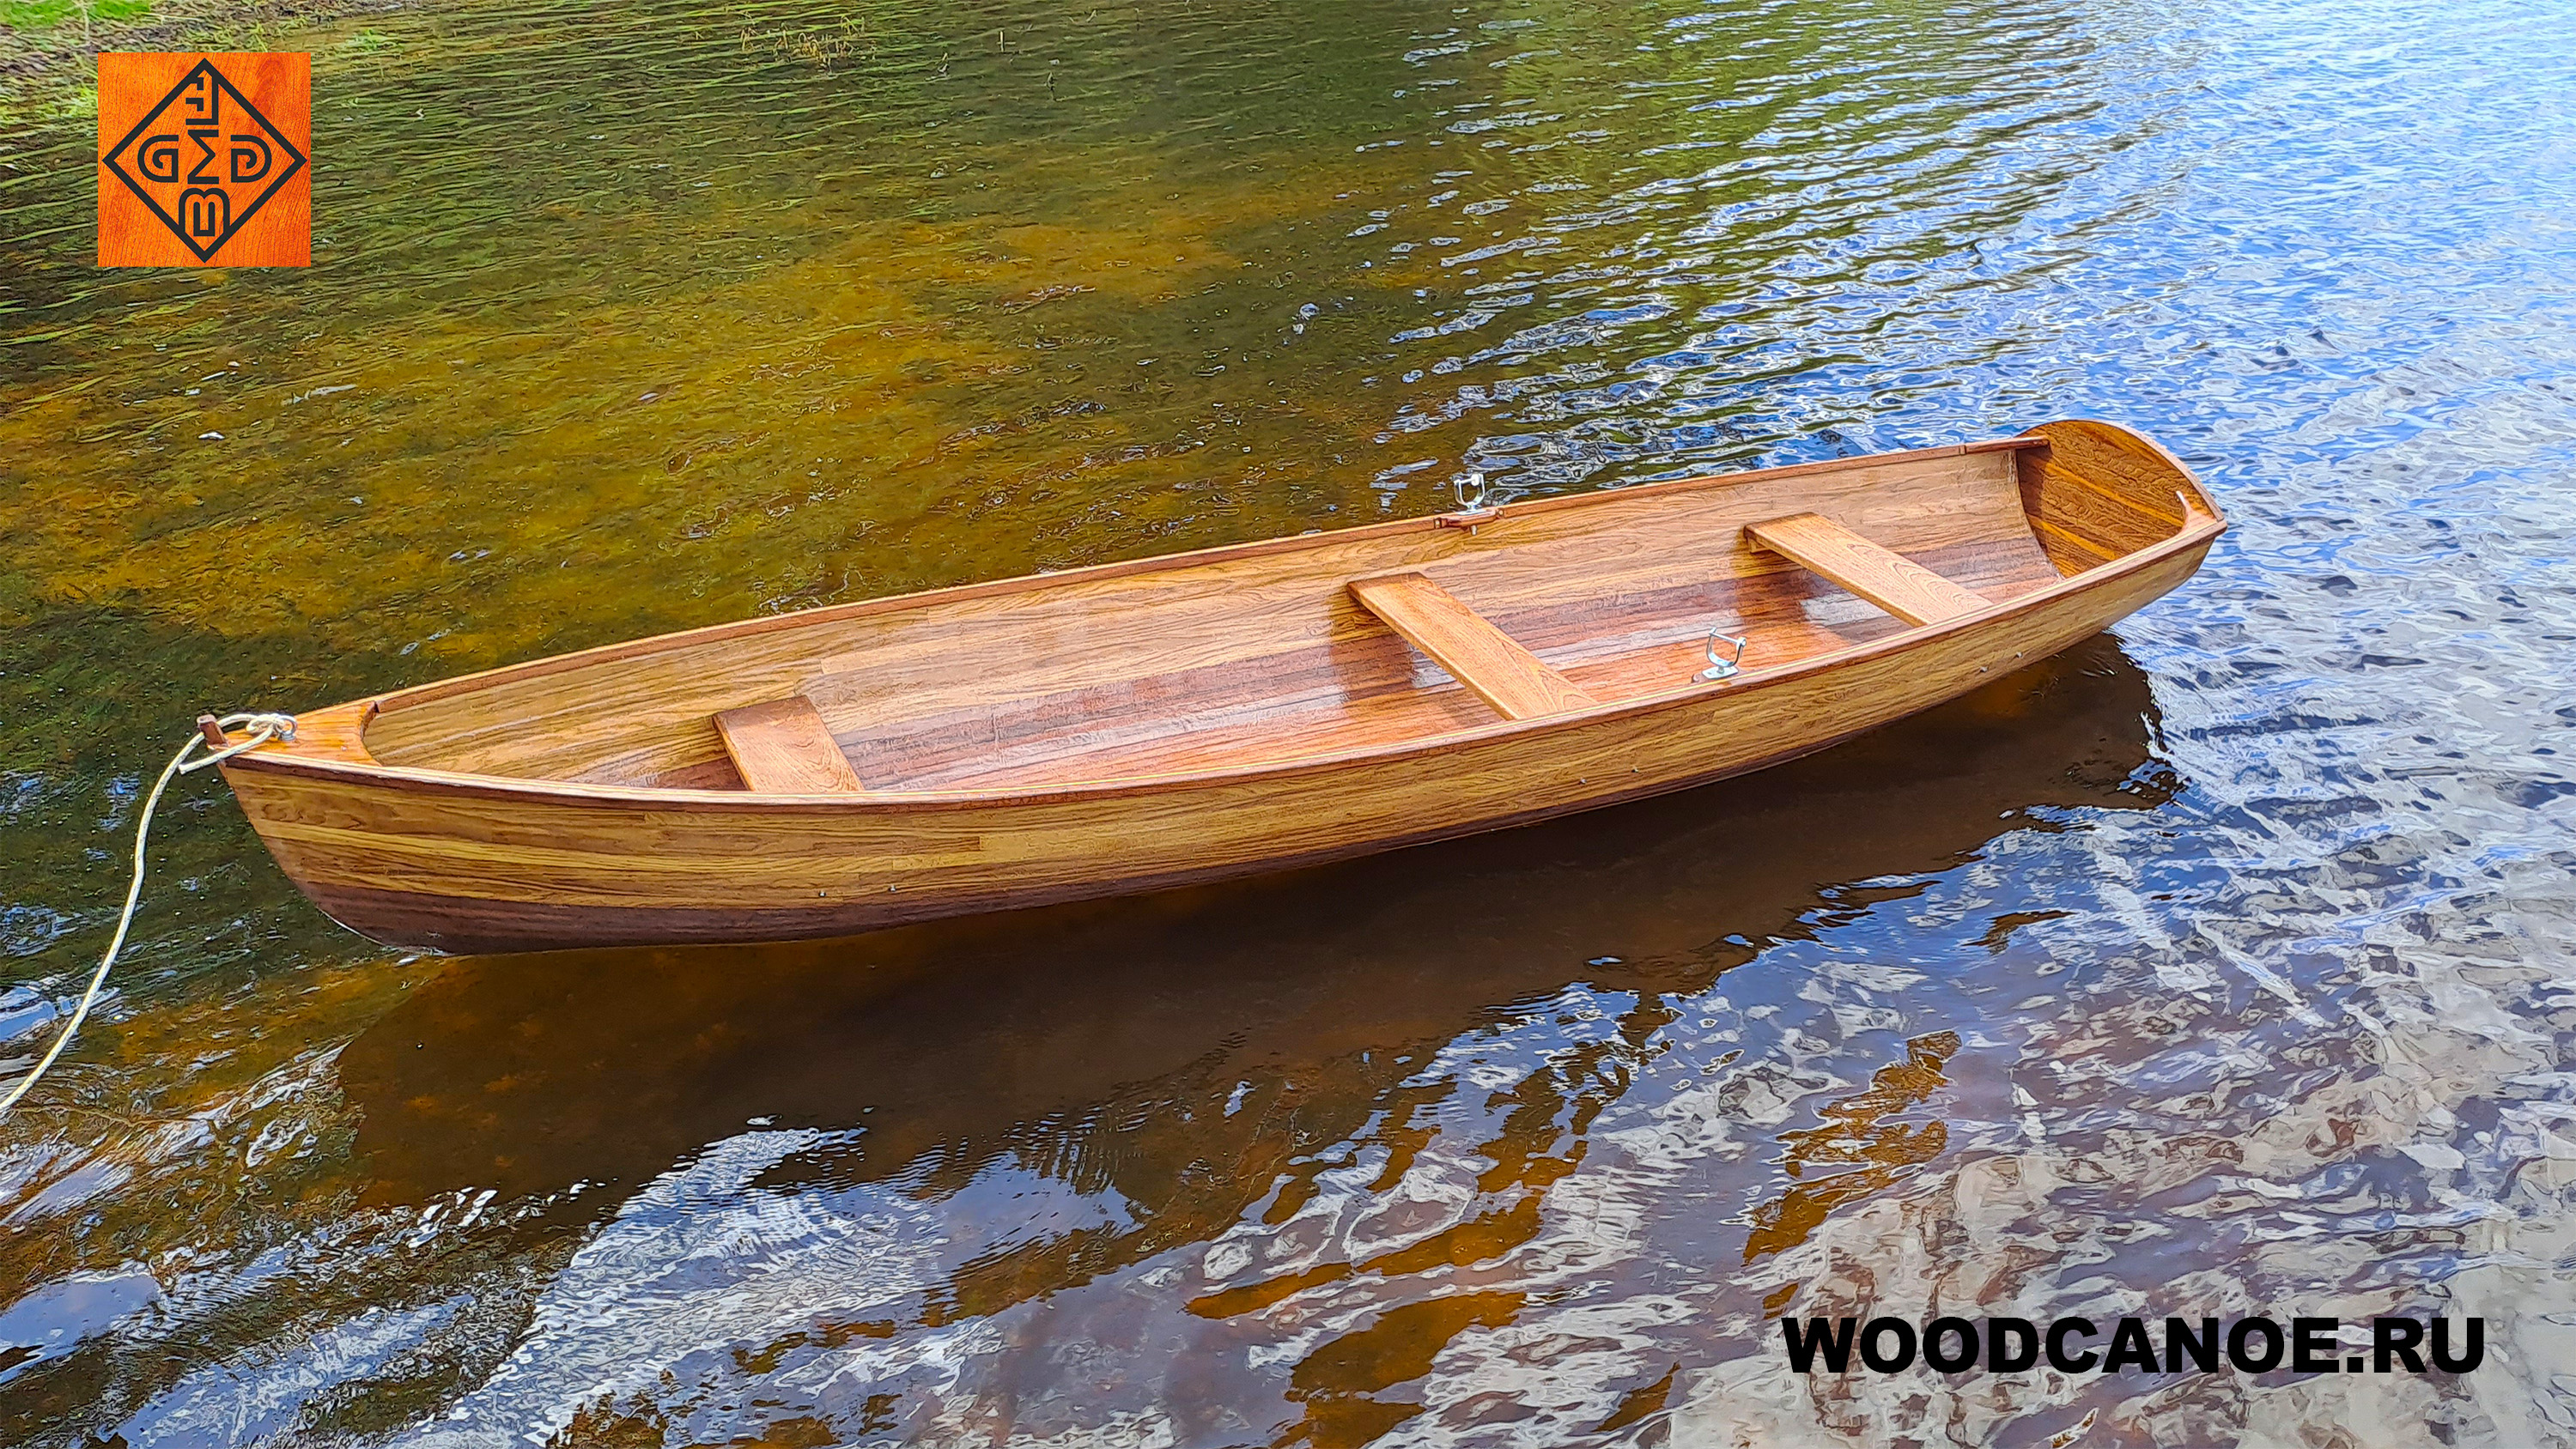 Изготовление деревянной лодки из дуба и красного дерева (КБ "ВУД-КАНОЭ")